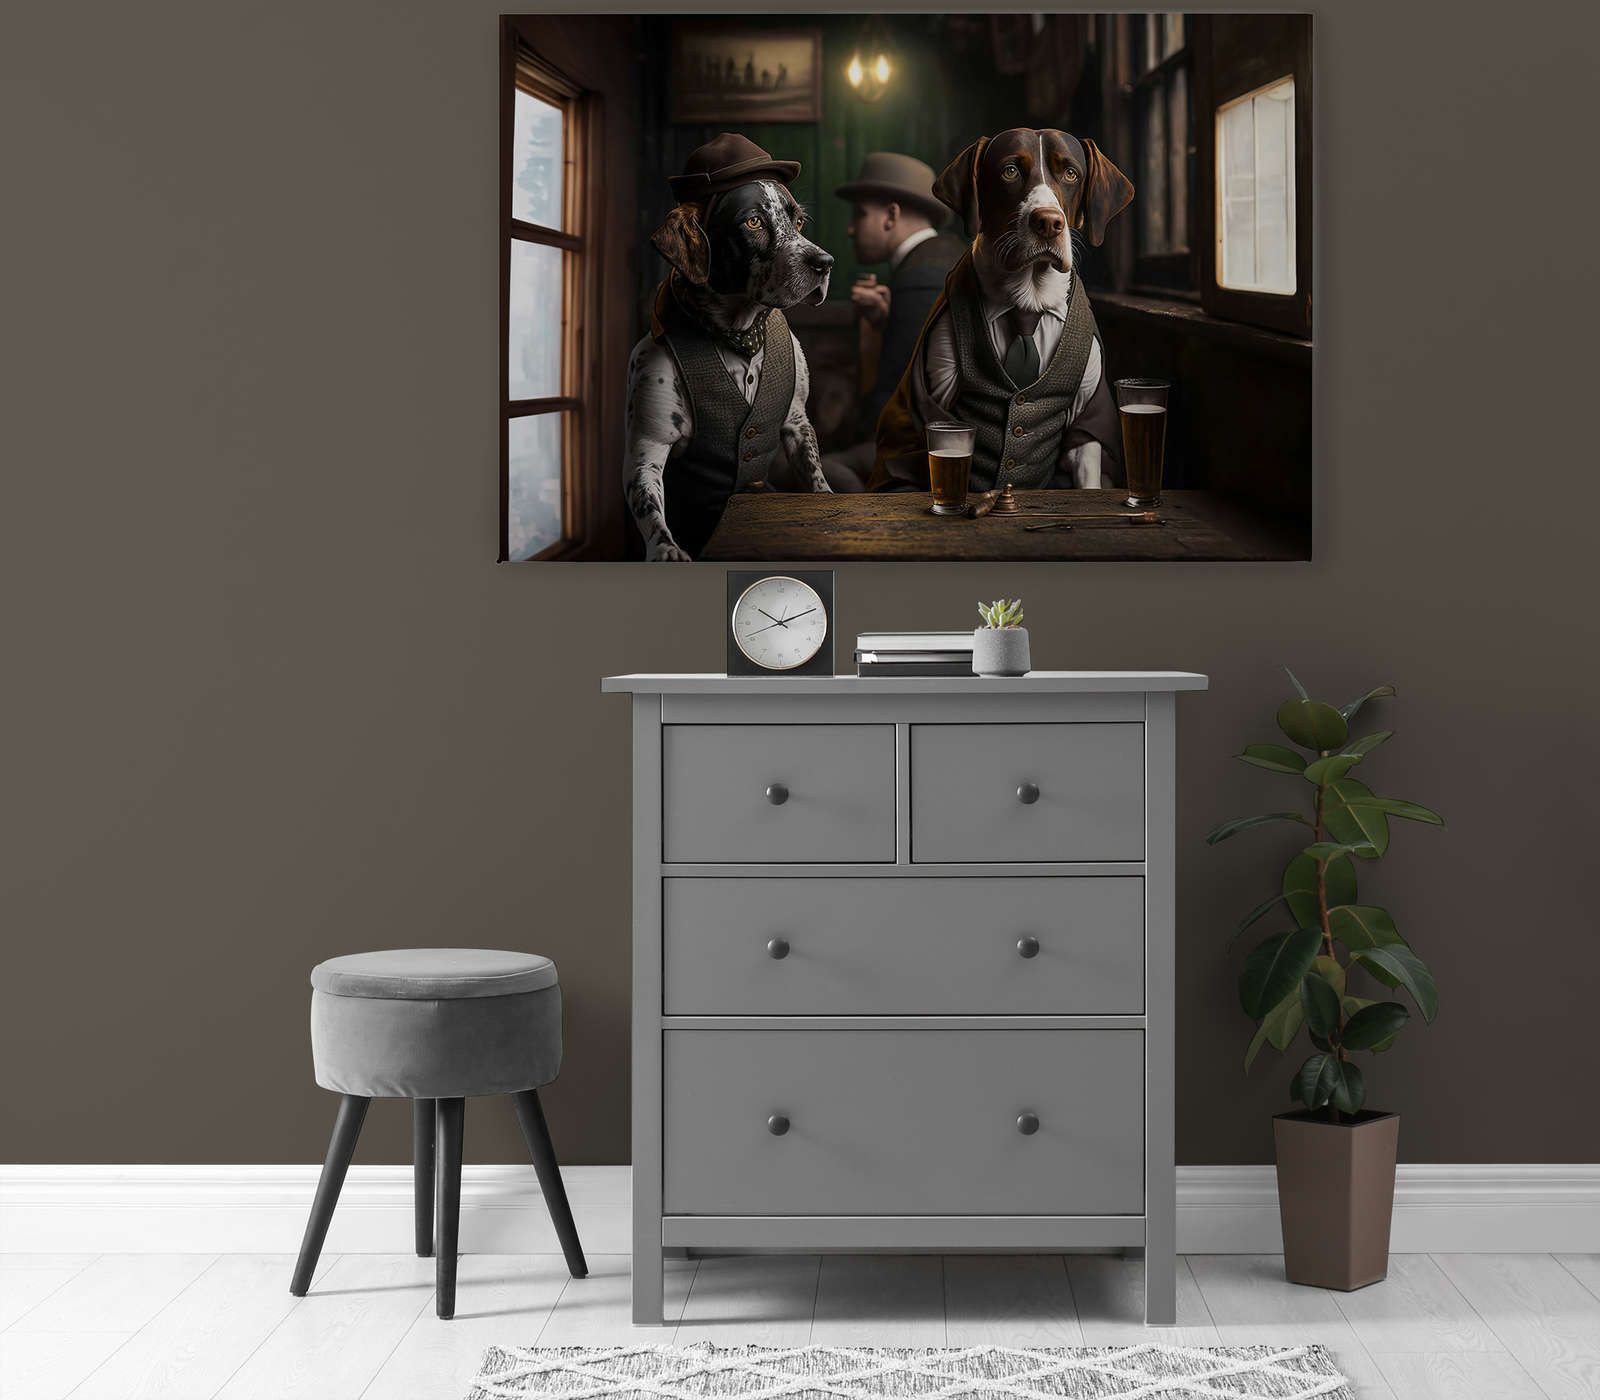             KI Pintura en lienzo »Doggy Bar« - 120 cm x 80 cm
        